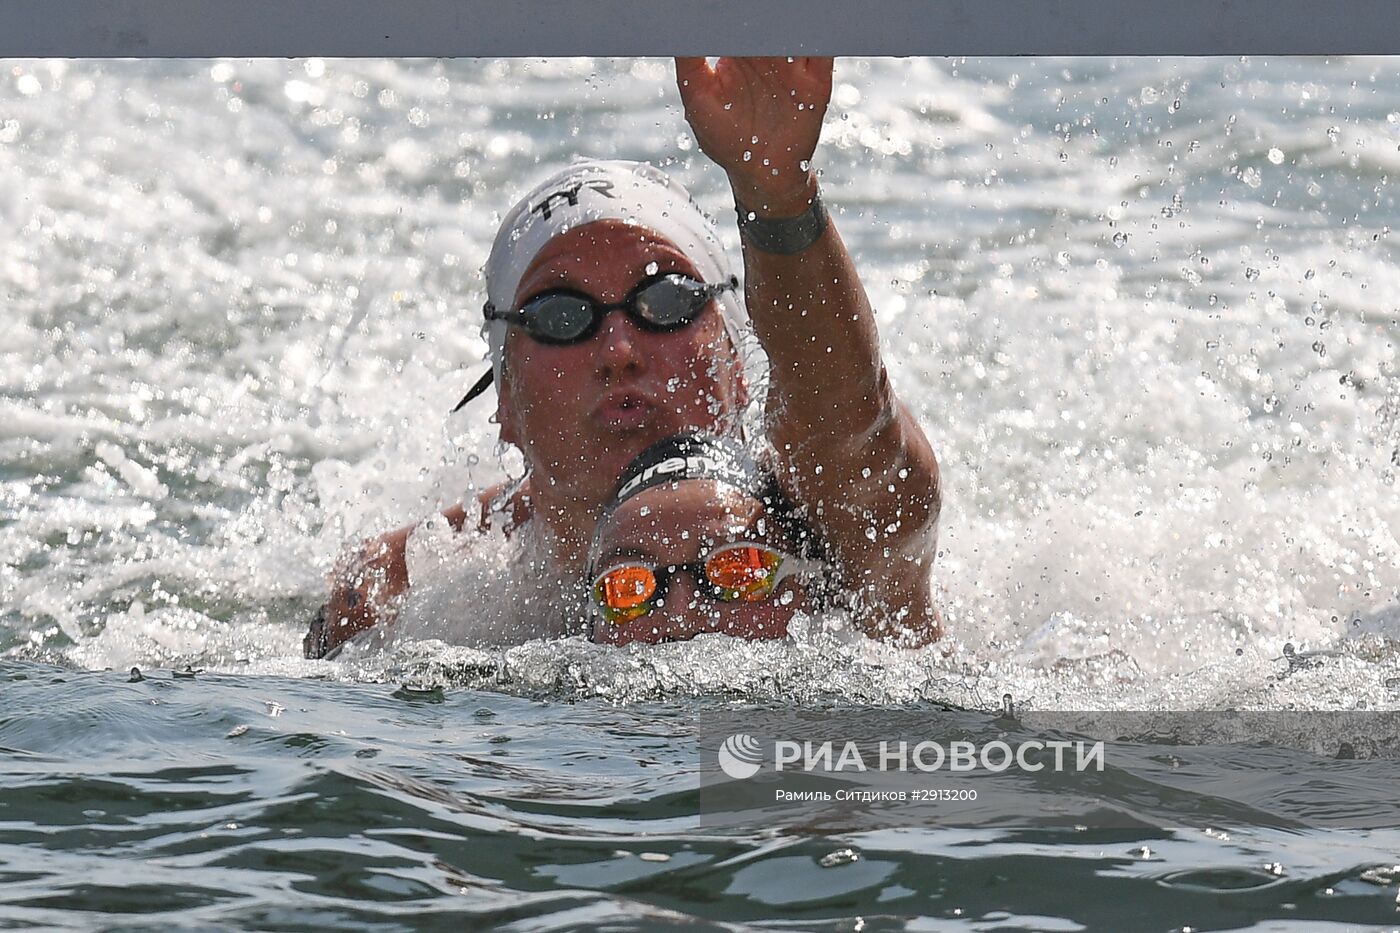 Олимпиада 2016. Плавание. Открытая вода 10 км. Женщины